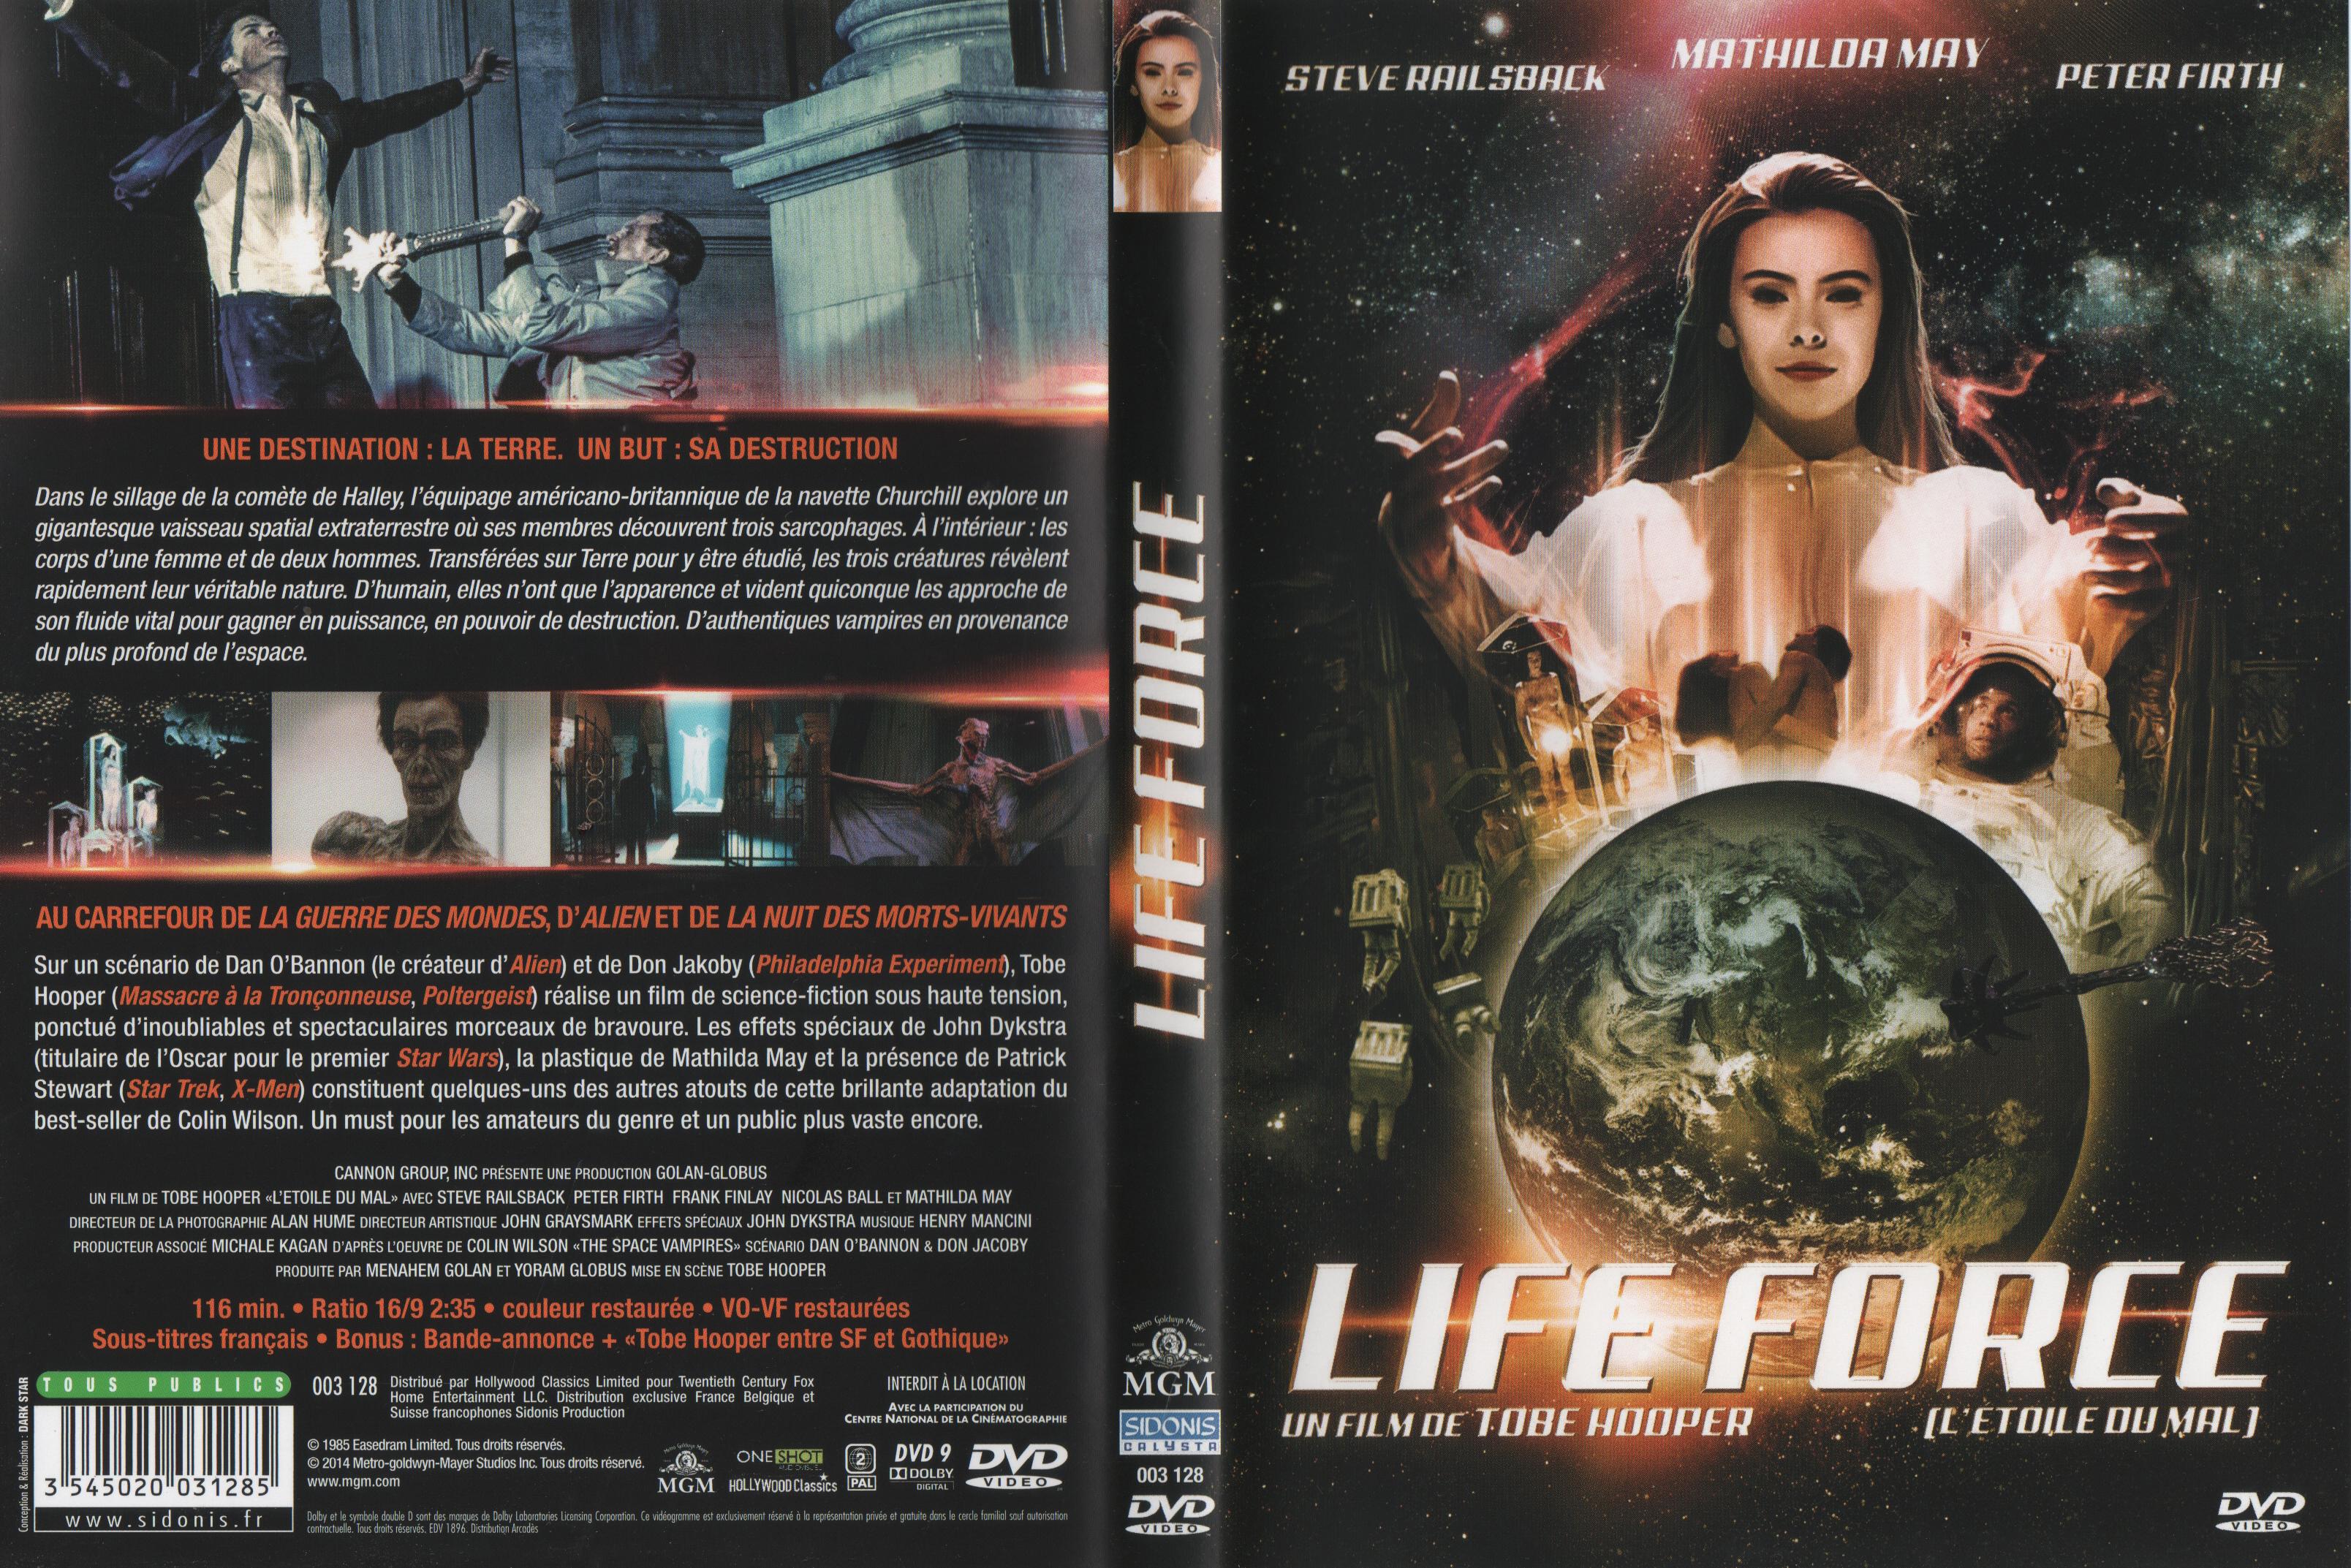 Jaquette DVD Lifeforce, l